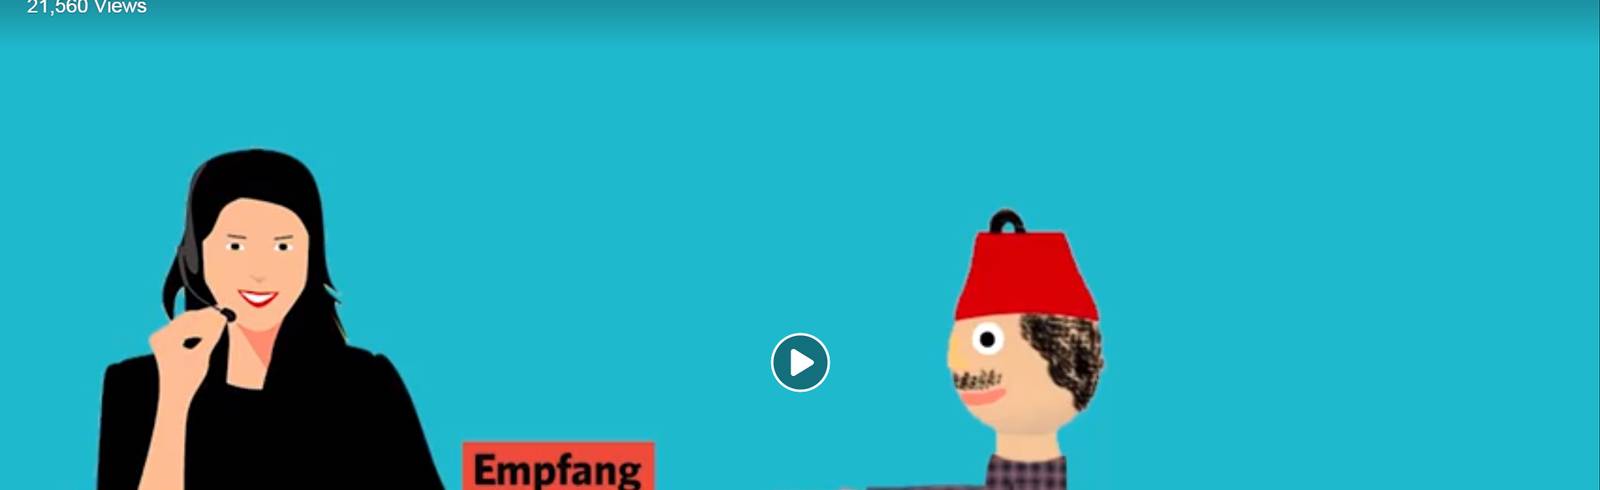 Hass im Netz: FPÖ mit rassistischem Video